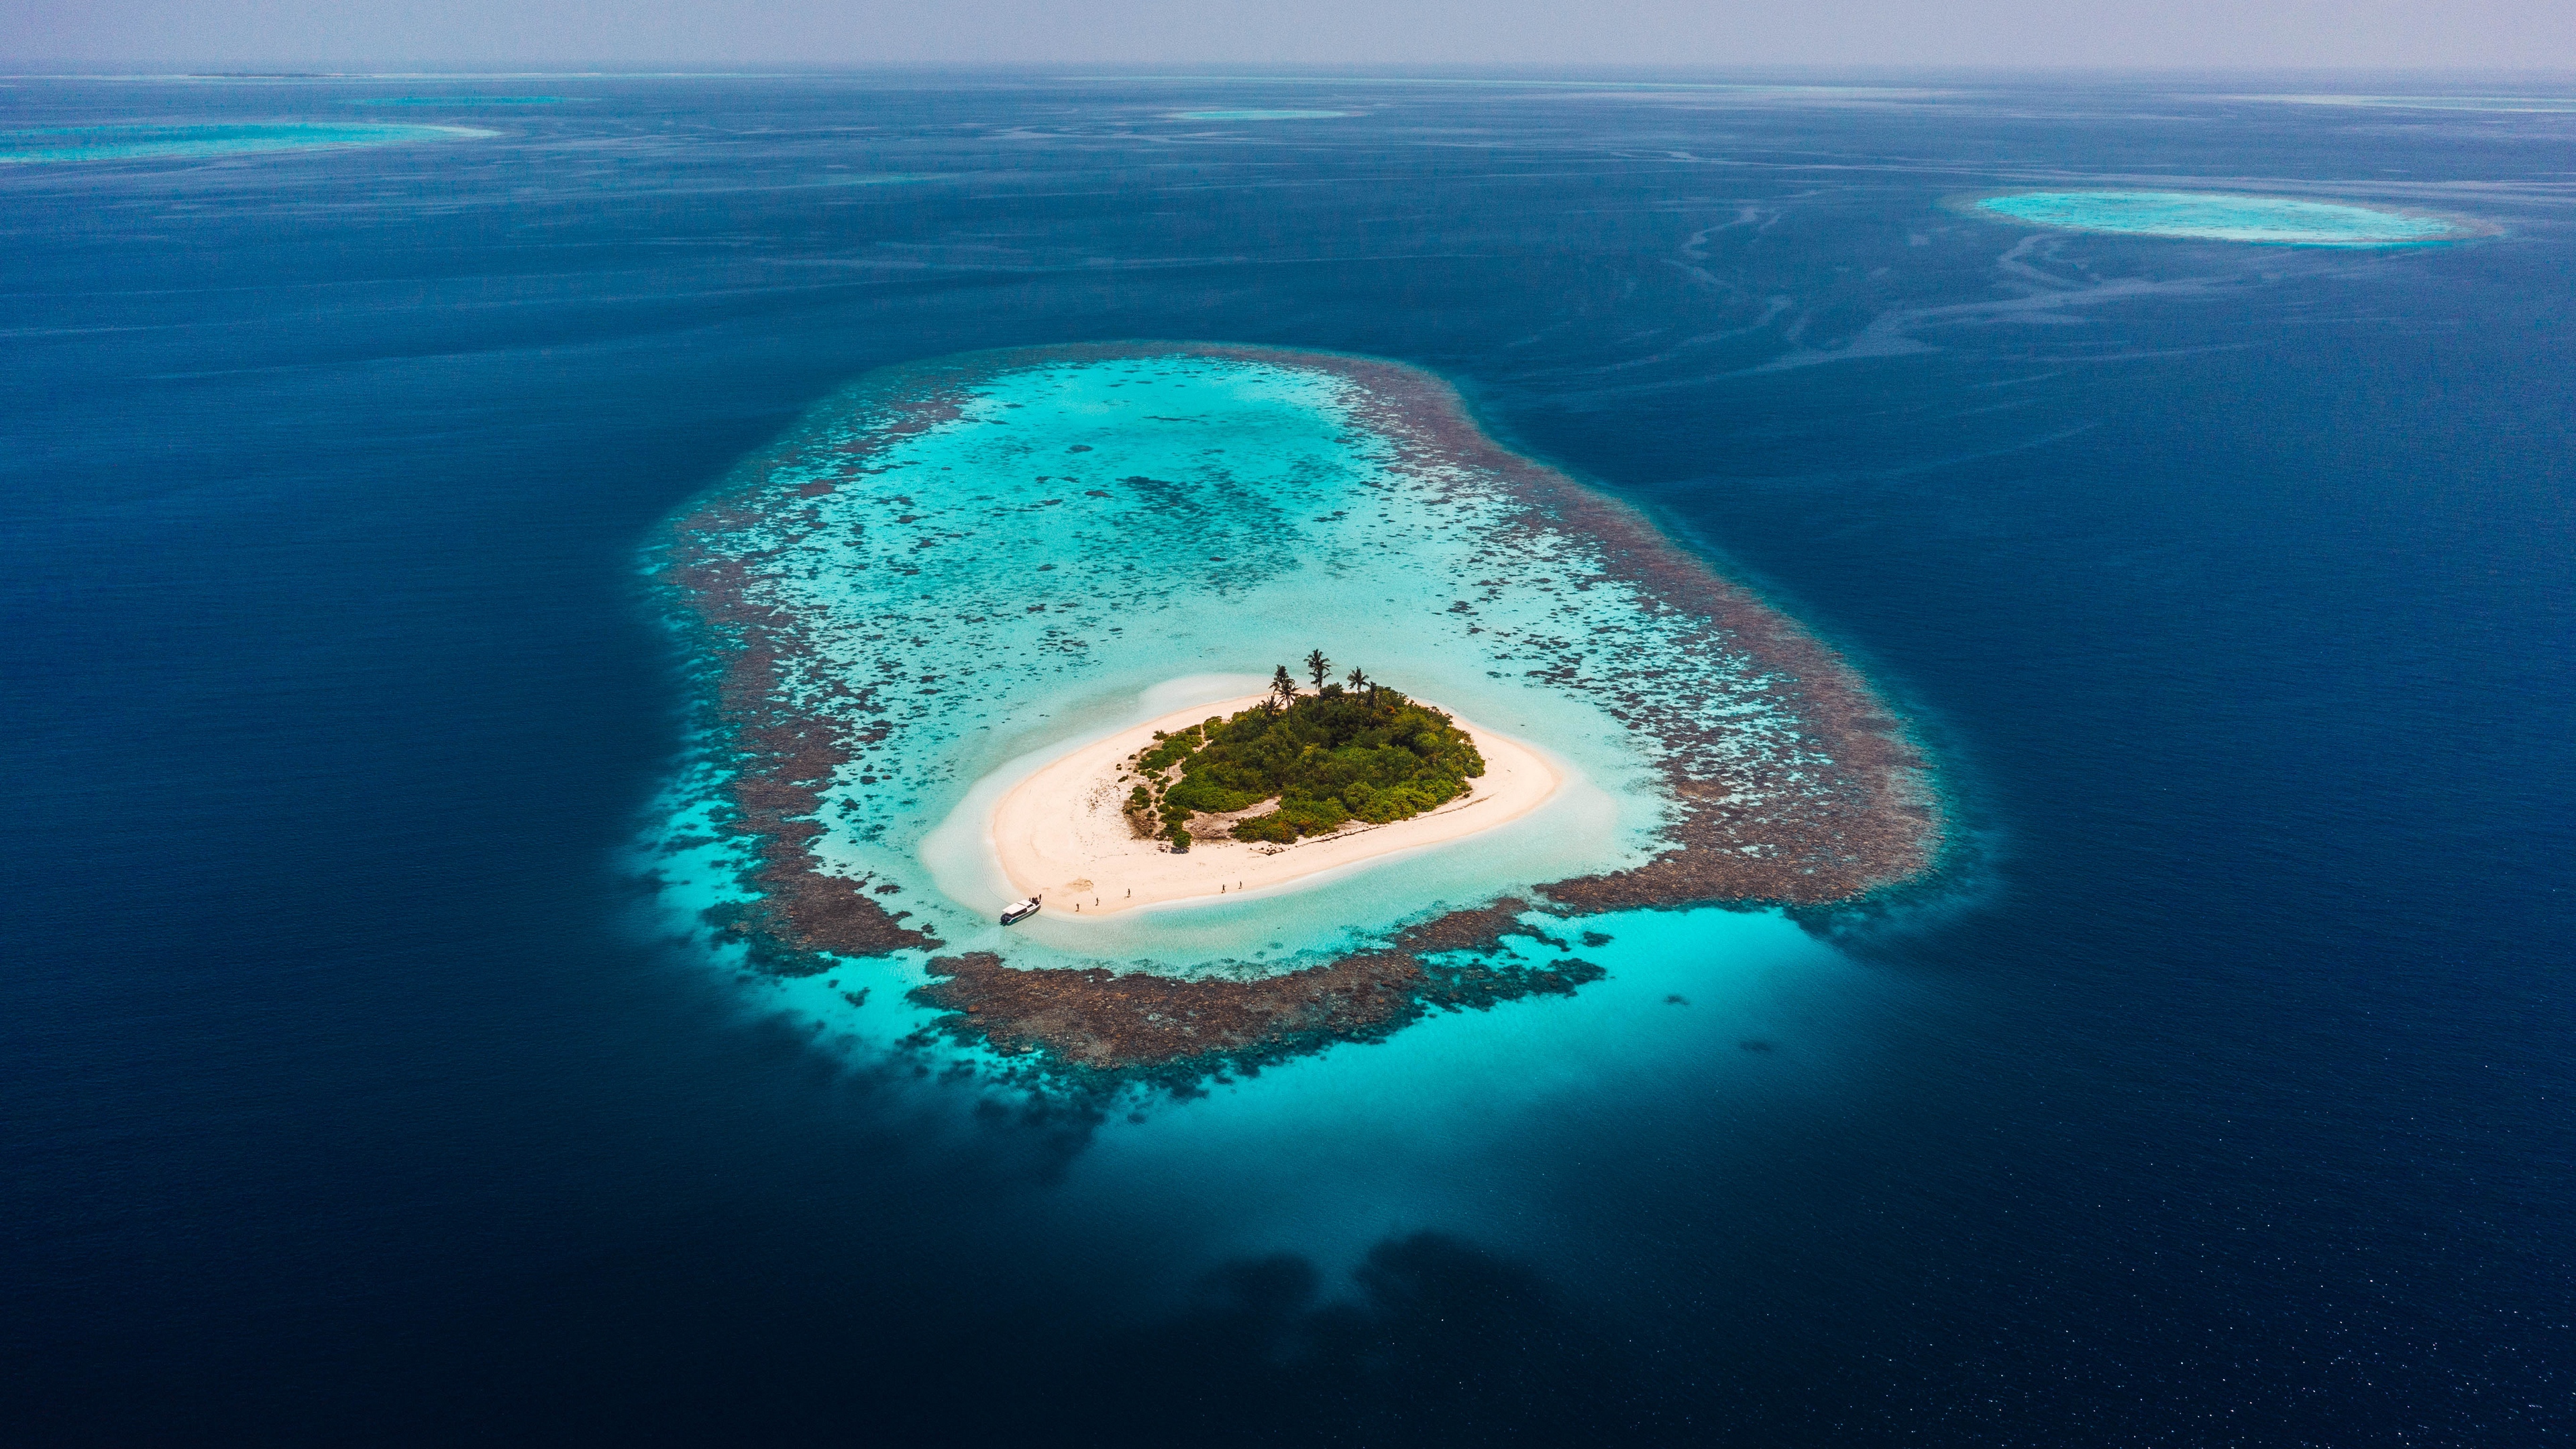 دانلود تصویر زمینه بسیار خاص و زیبای جزیره وسط اقیانوس با کیفیت 4k